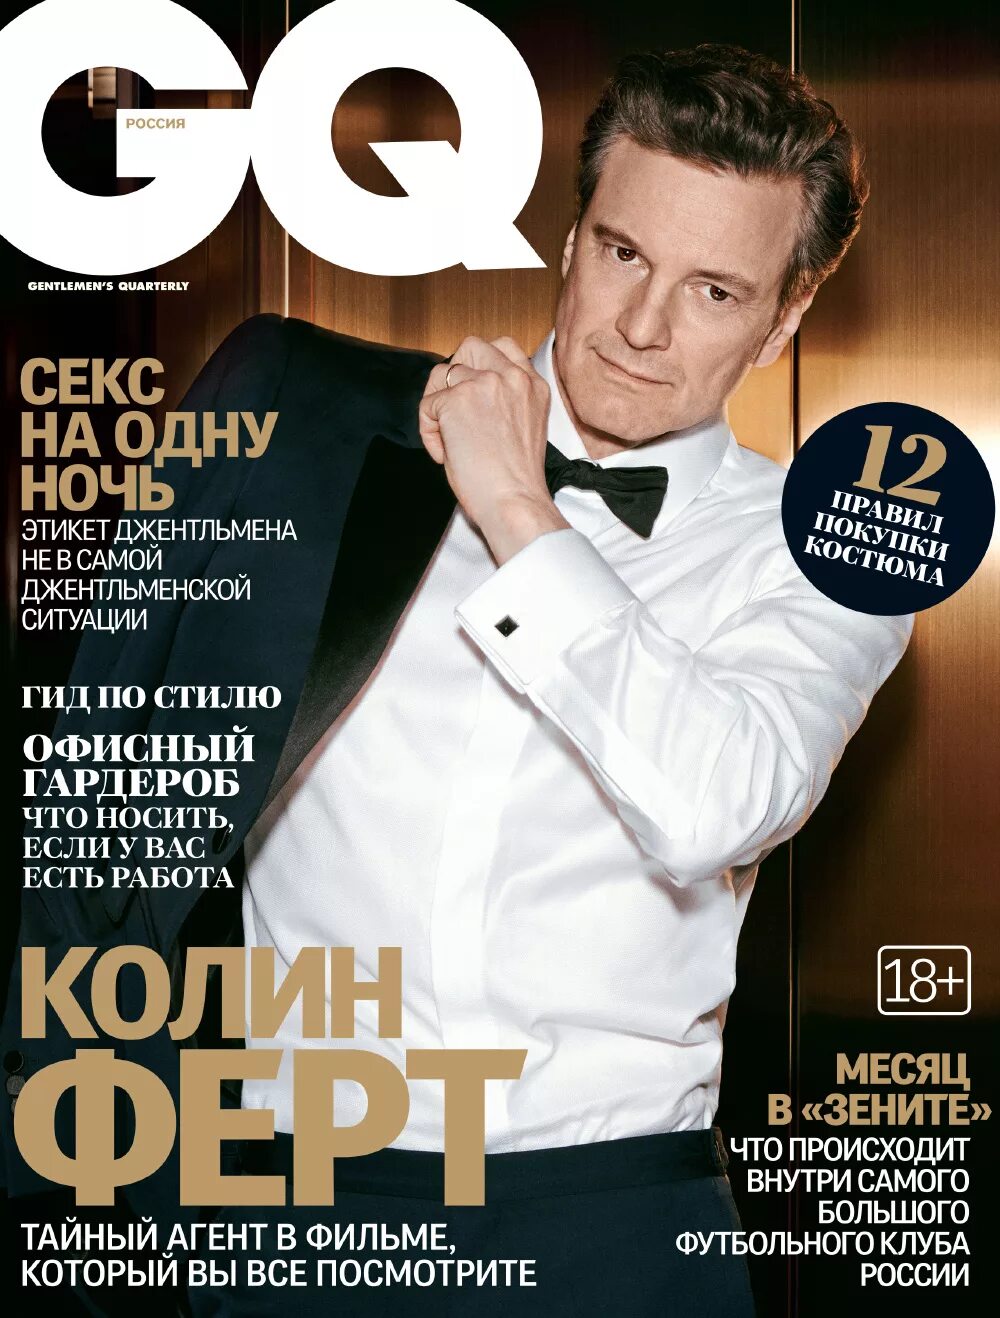 Обложка мужского журнала. Журнал gq. Gq обложки. Обложка журнала с мужчиной.